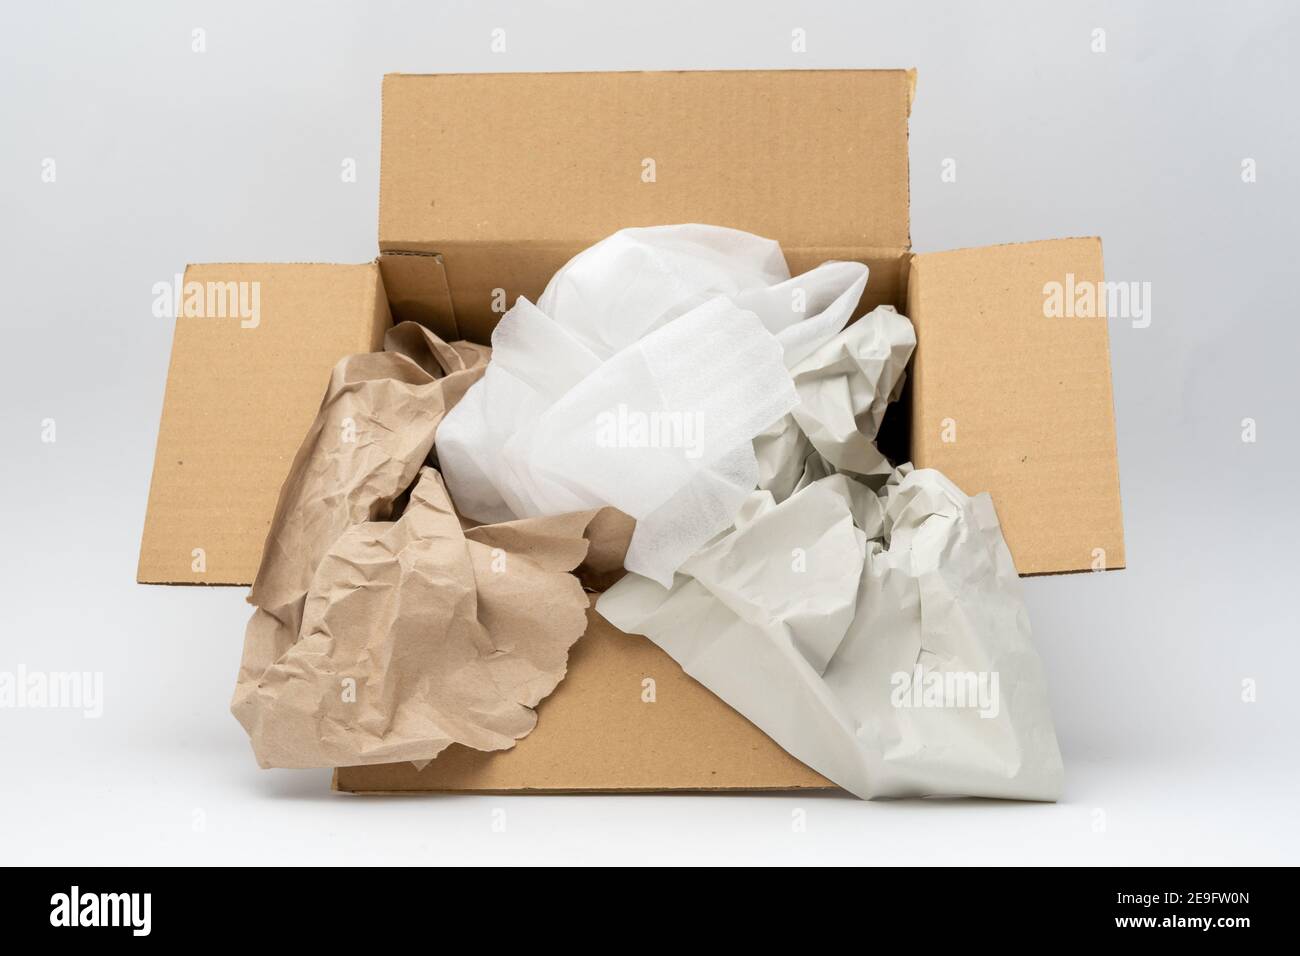 Material de embalaje dentro de una caja para el envío. Diferentes envolturas como papel reciclado y hojas de espuma de plástico para envolver algo. Foto de stock